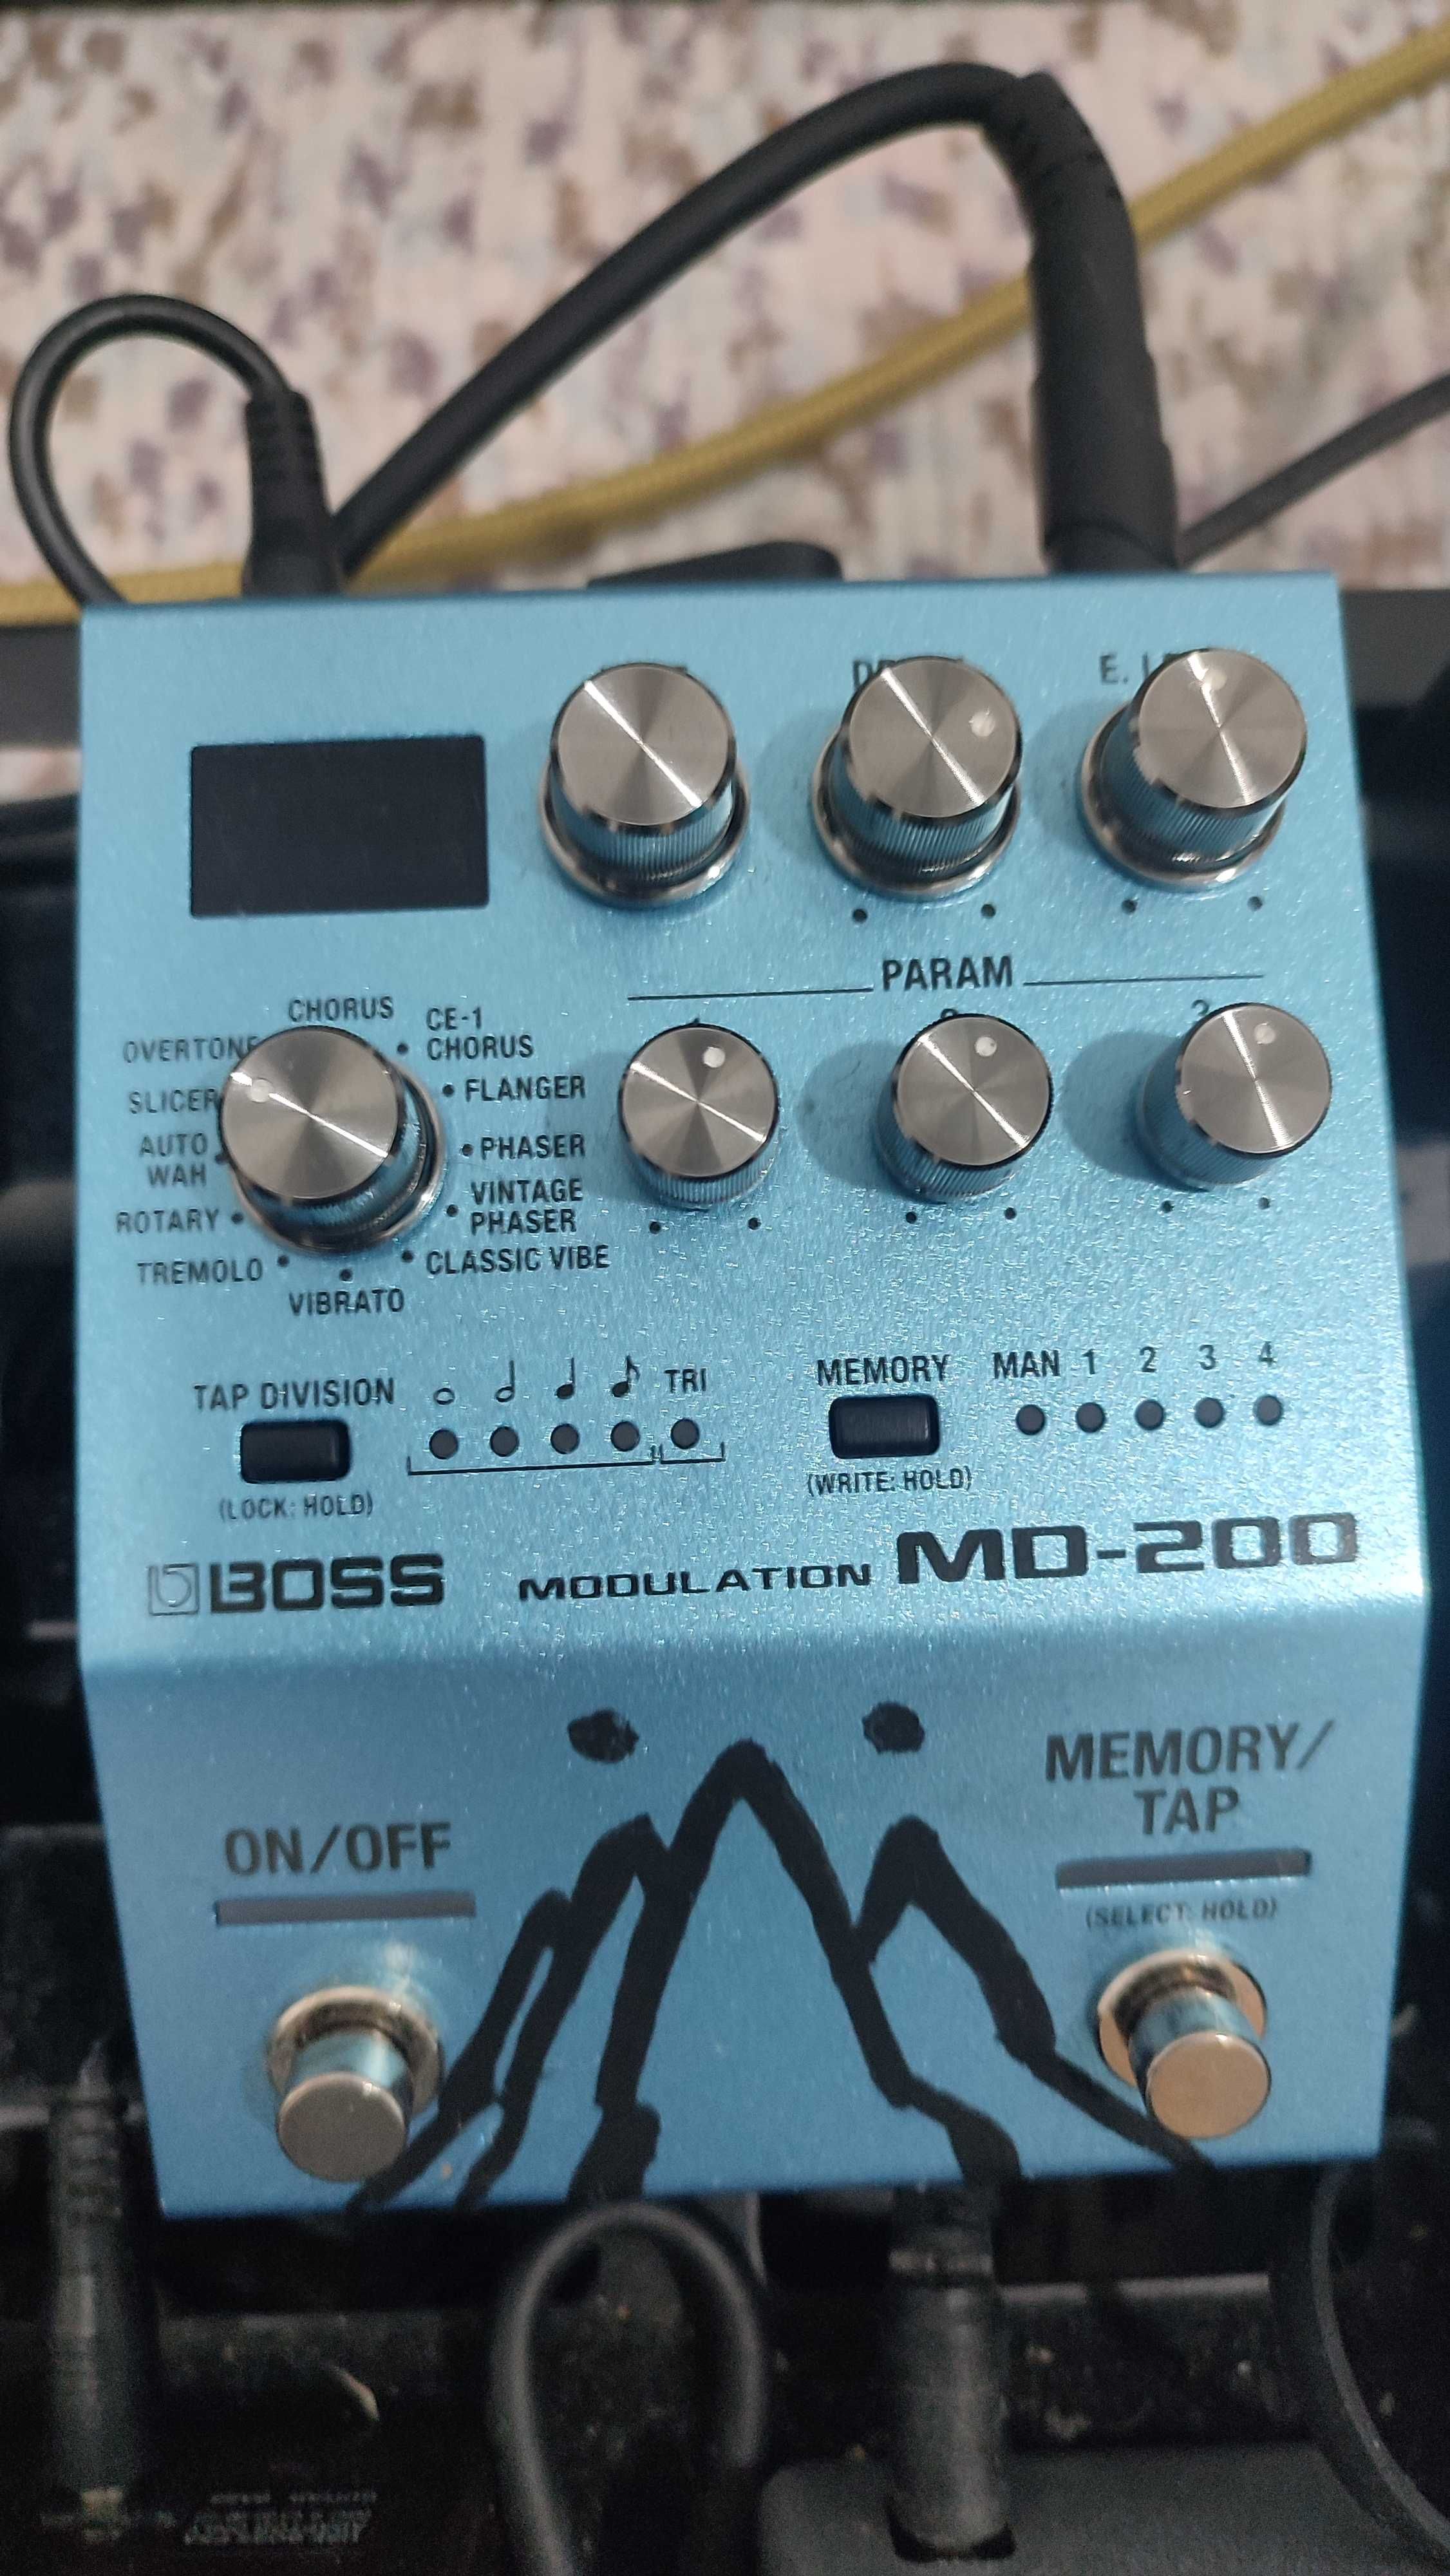 Boss MD-200 multi modulation pedal